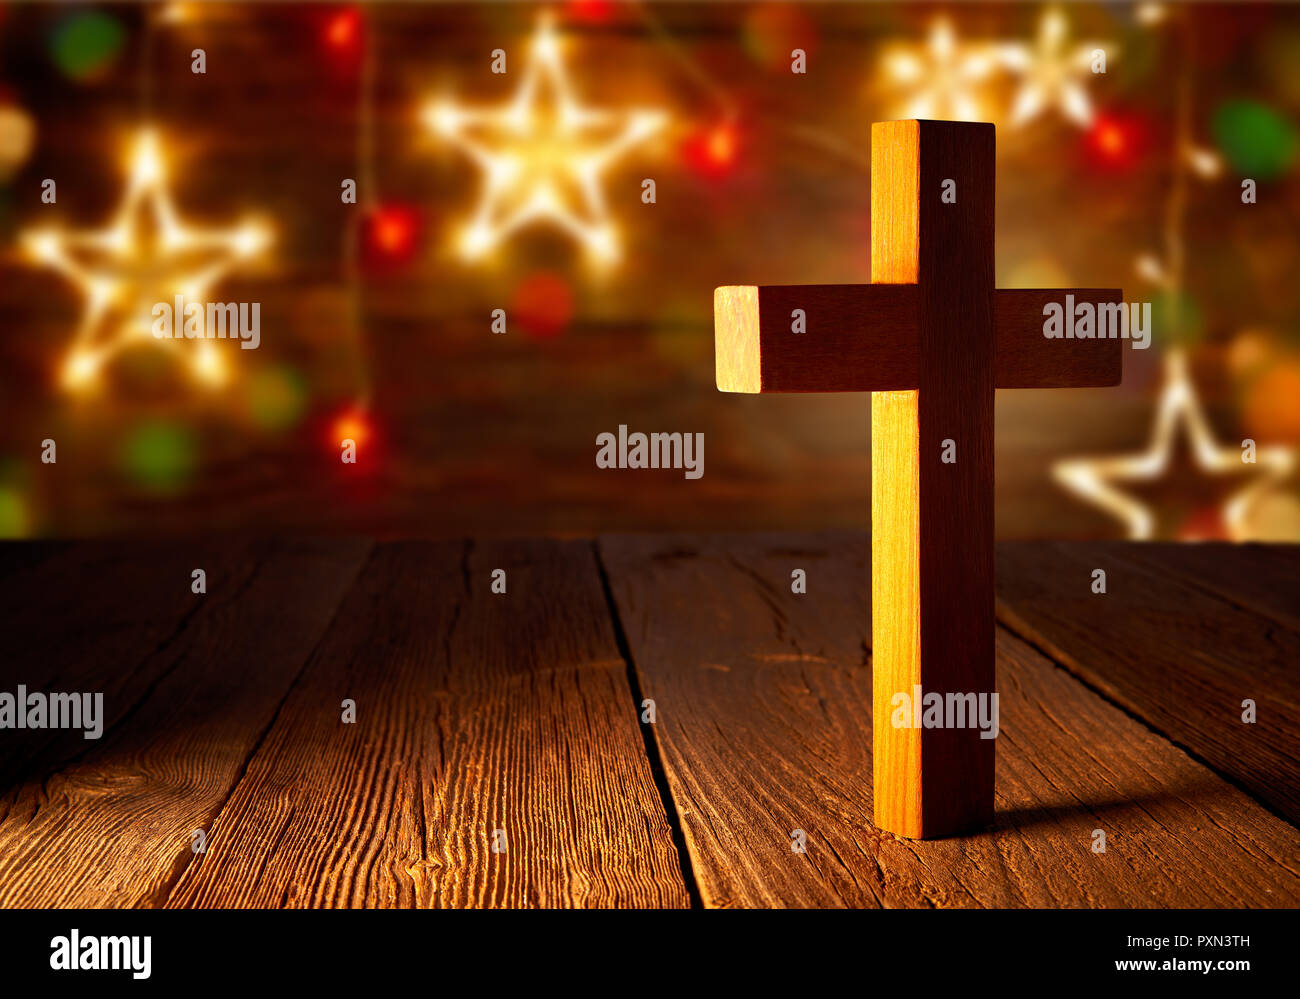 Fondo navidad cristiana fotografías e imágenes de alta resolución - Alamy